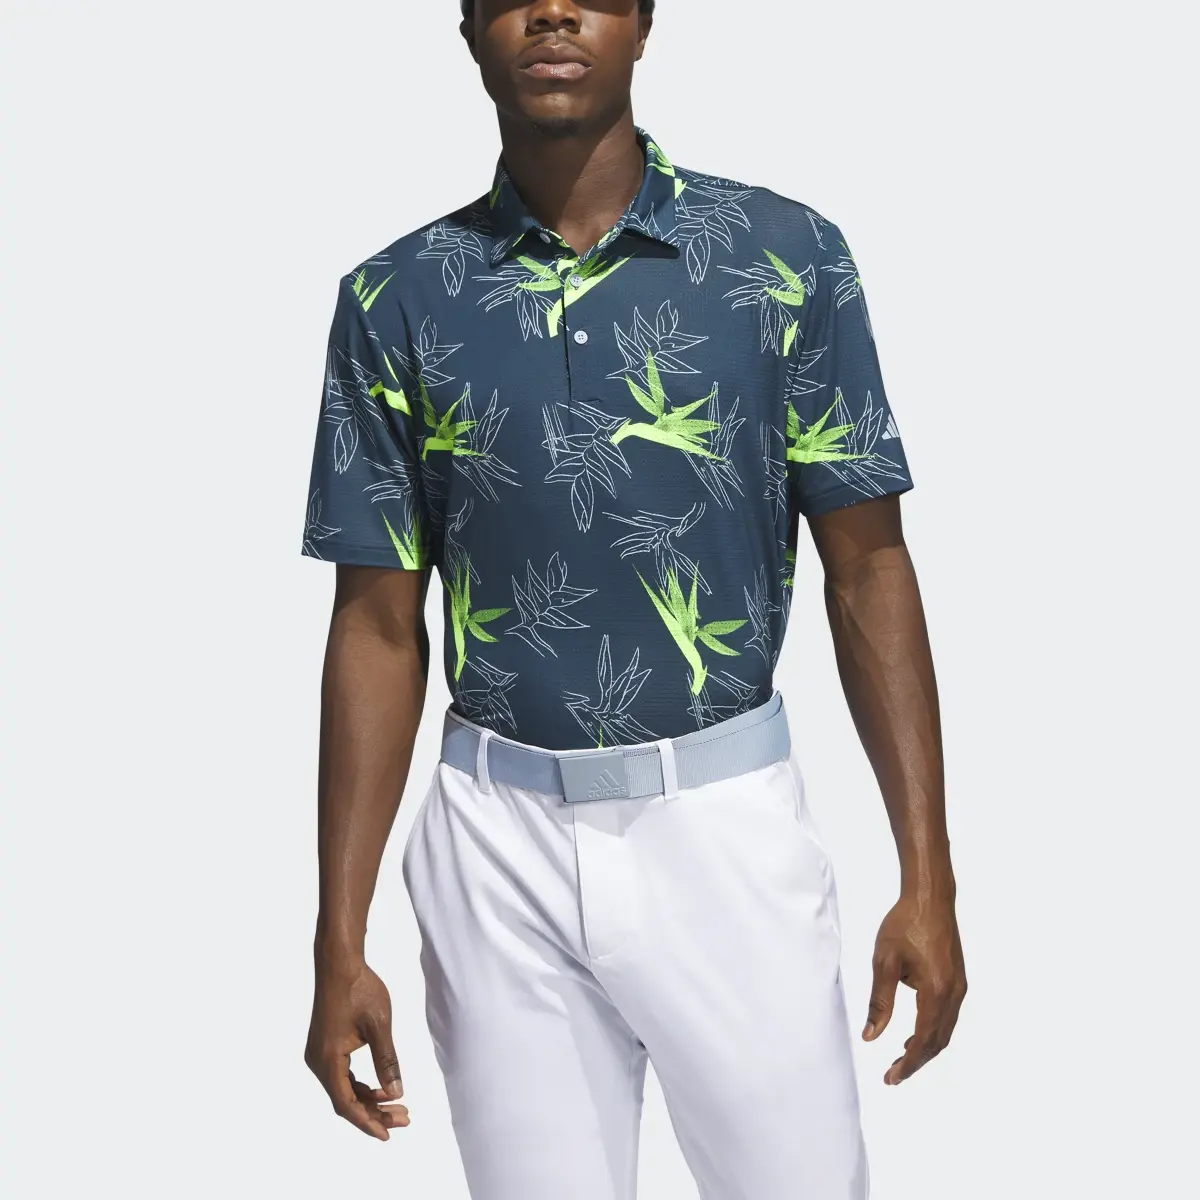 Adidas Oasis Mesh Golf Polo Shirt. 1